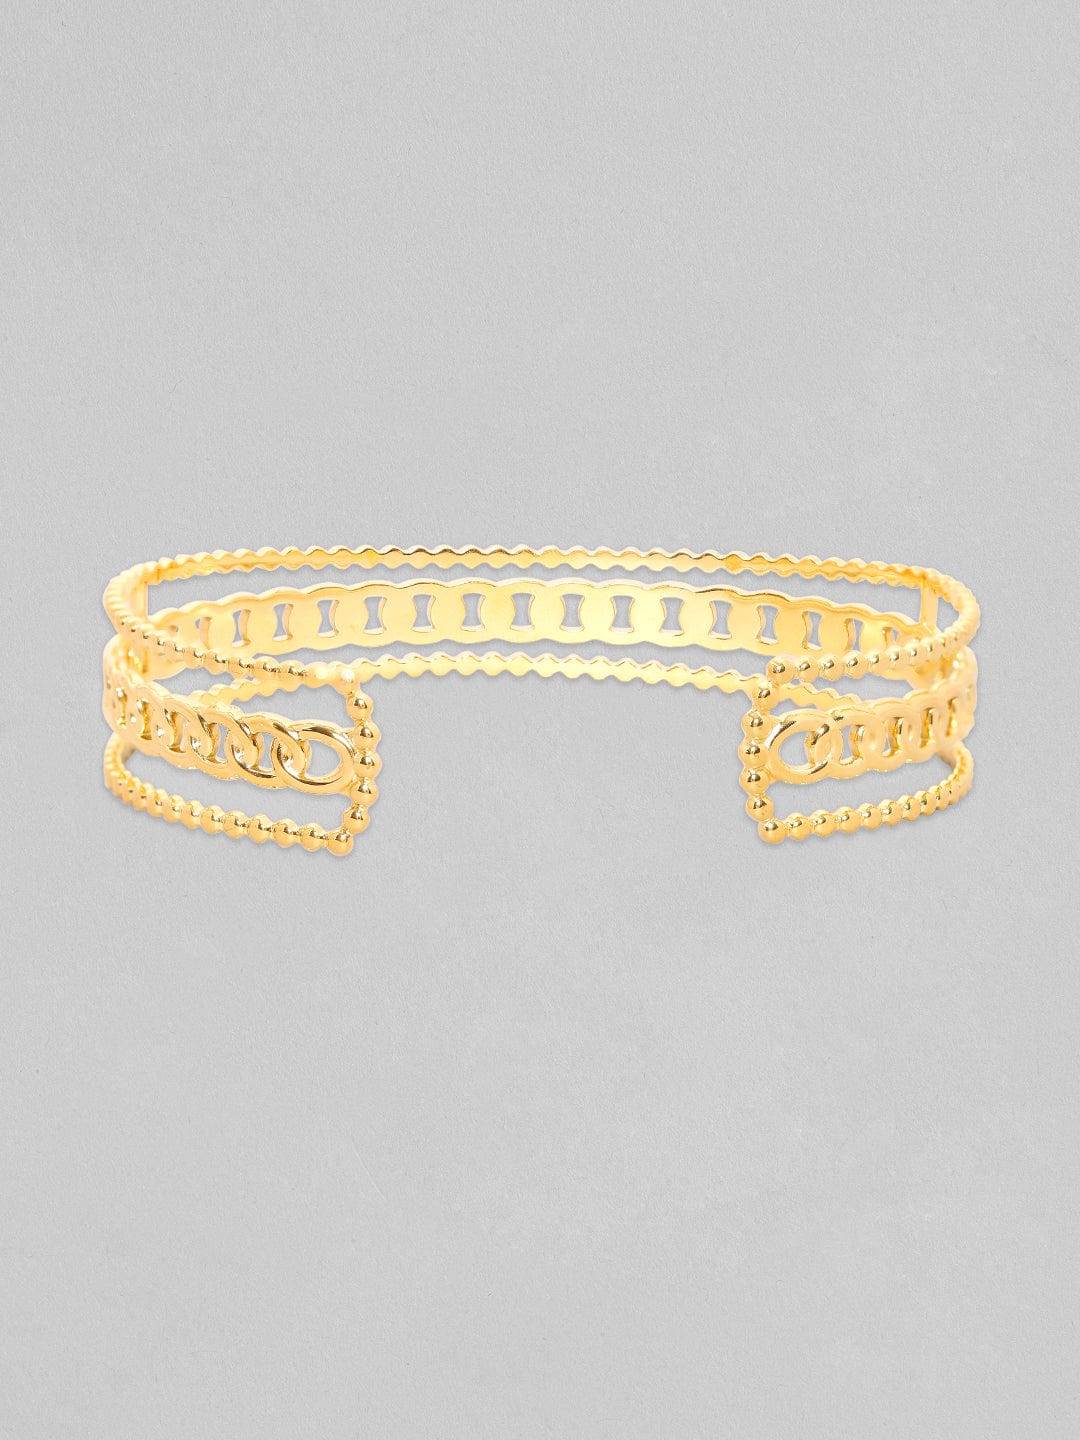 Rubans Voguish Gold Toned Stainless Steel Cuban Link Adjustable Bracelet Bangles & Bracelets